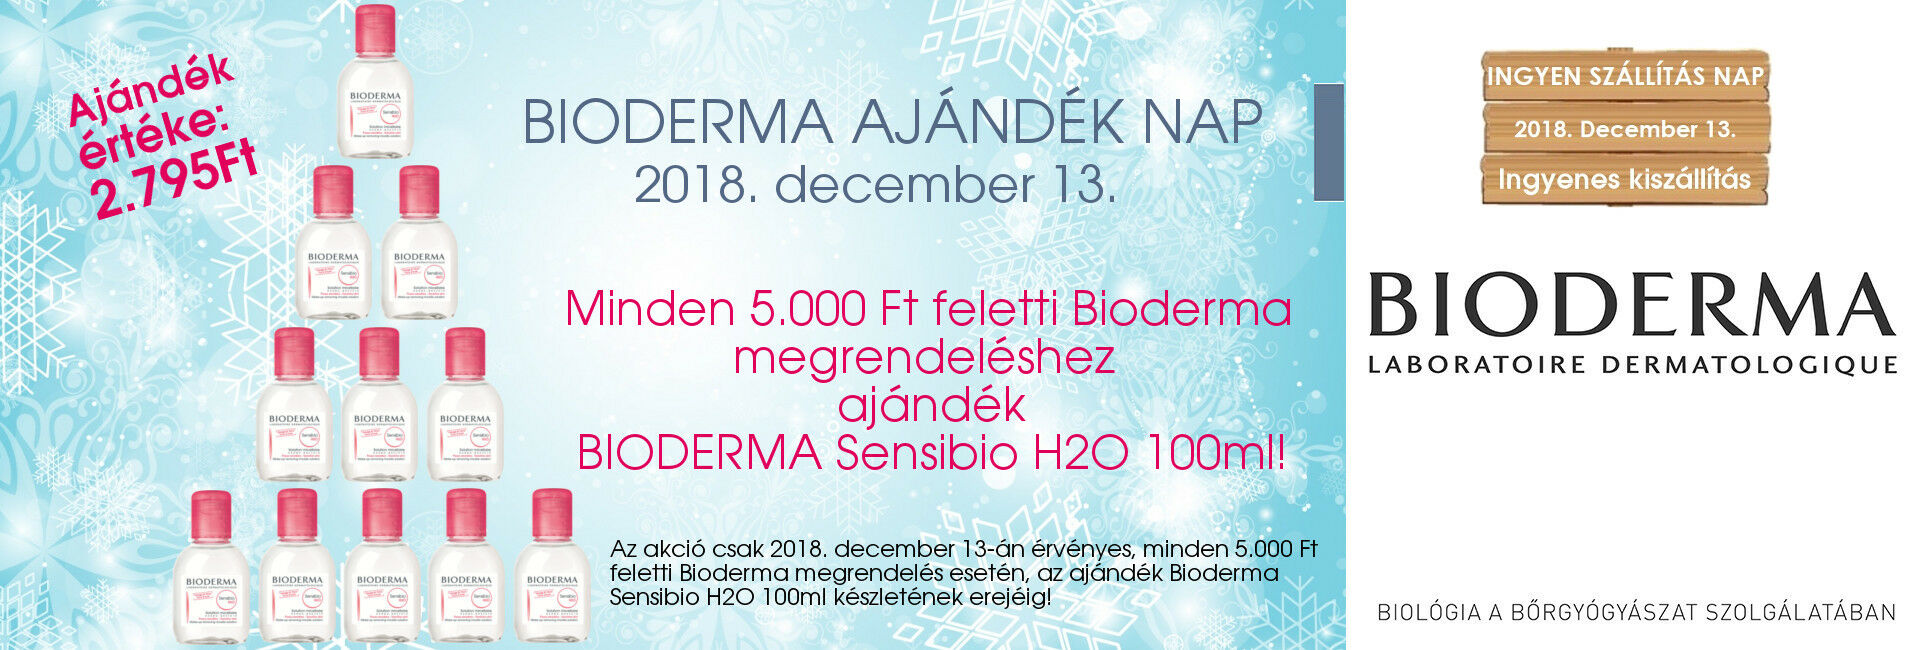 2018. december 13-án minden 5000 Ft feletti Bioderma megrendeléshez ajándékba adunk 1db Bioderma Sensibio H2O 100ml-es micellás oldatot!